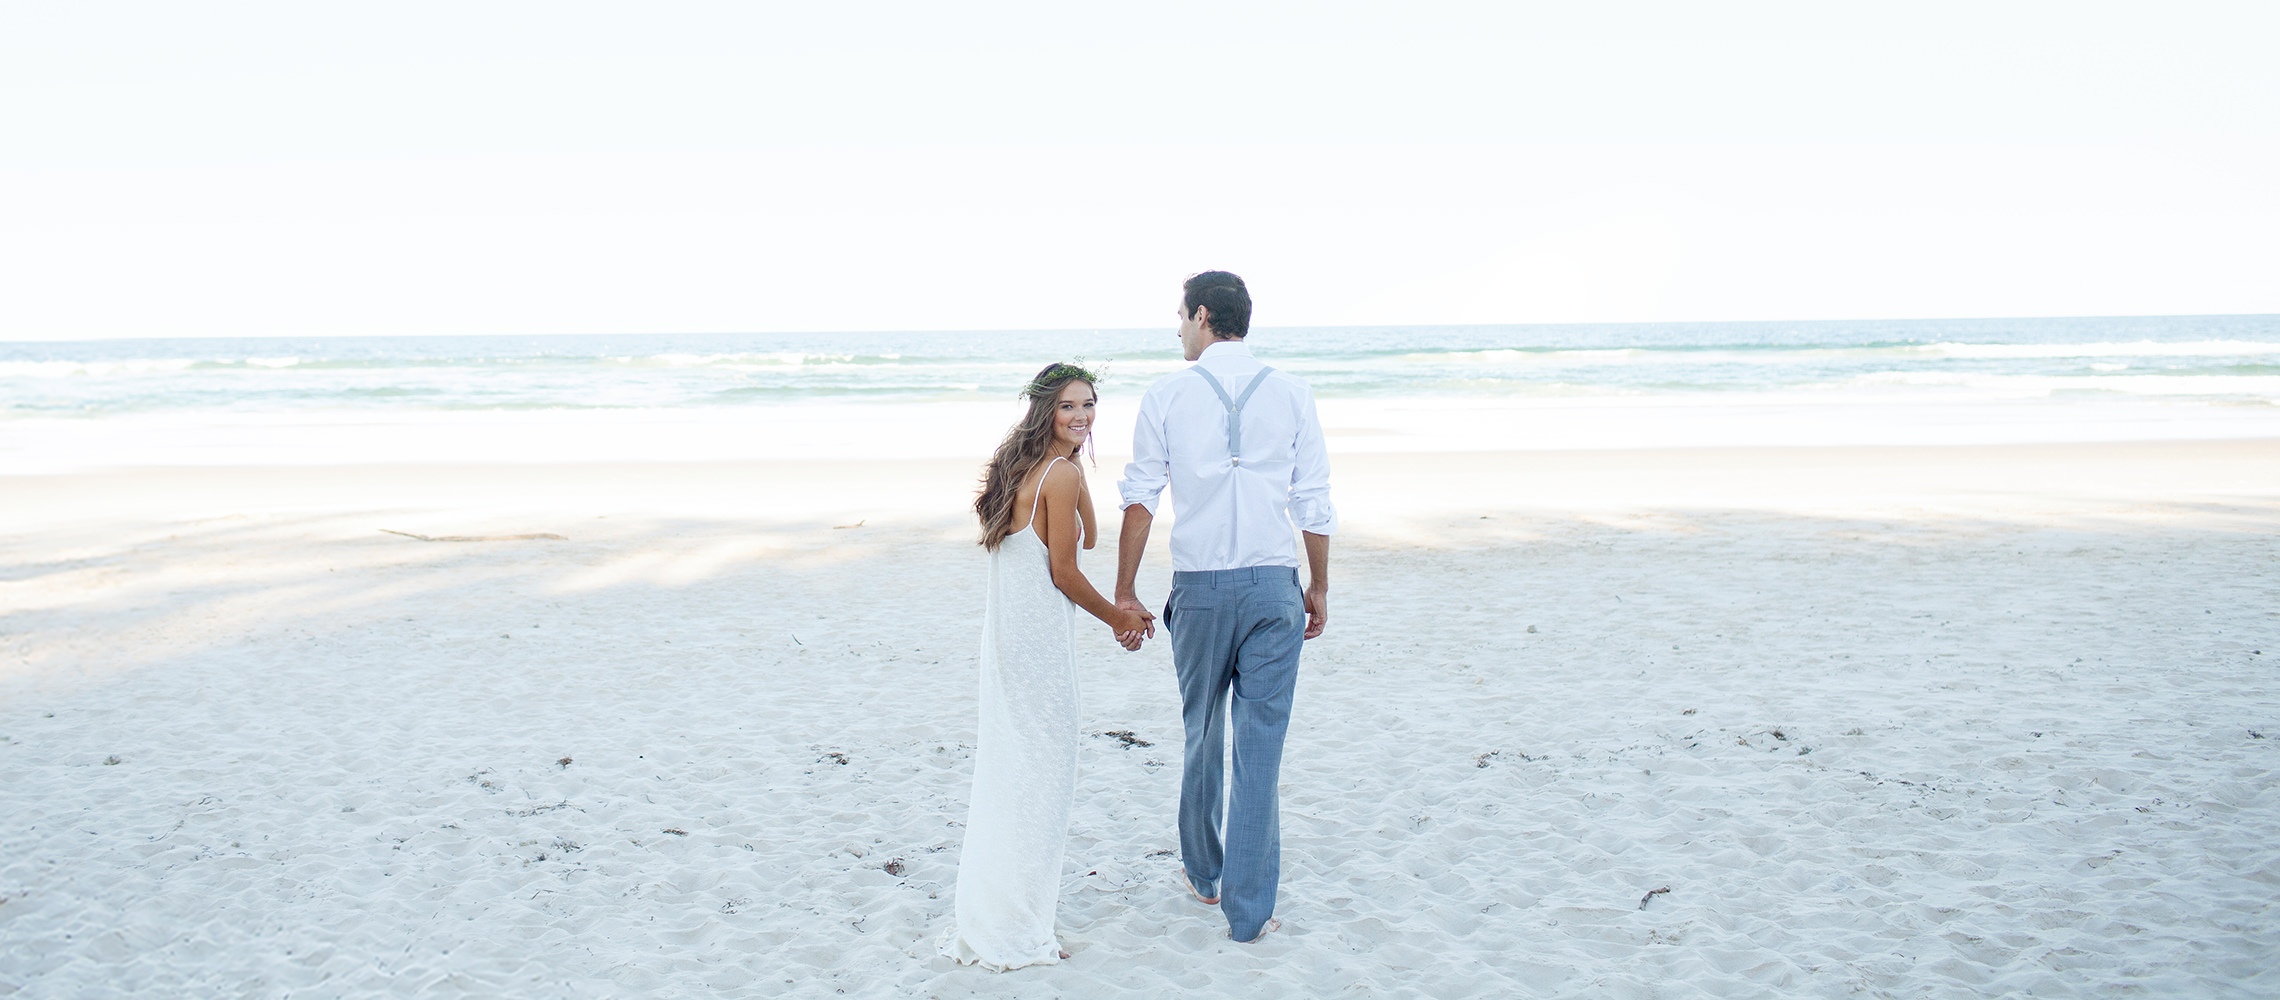 Jeunes mariés marchant sur une plage de sable blanc.